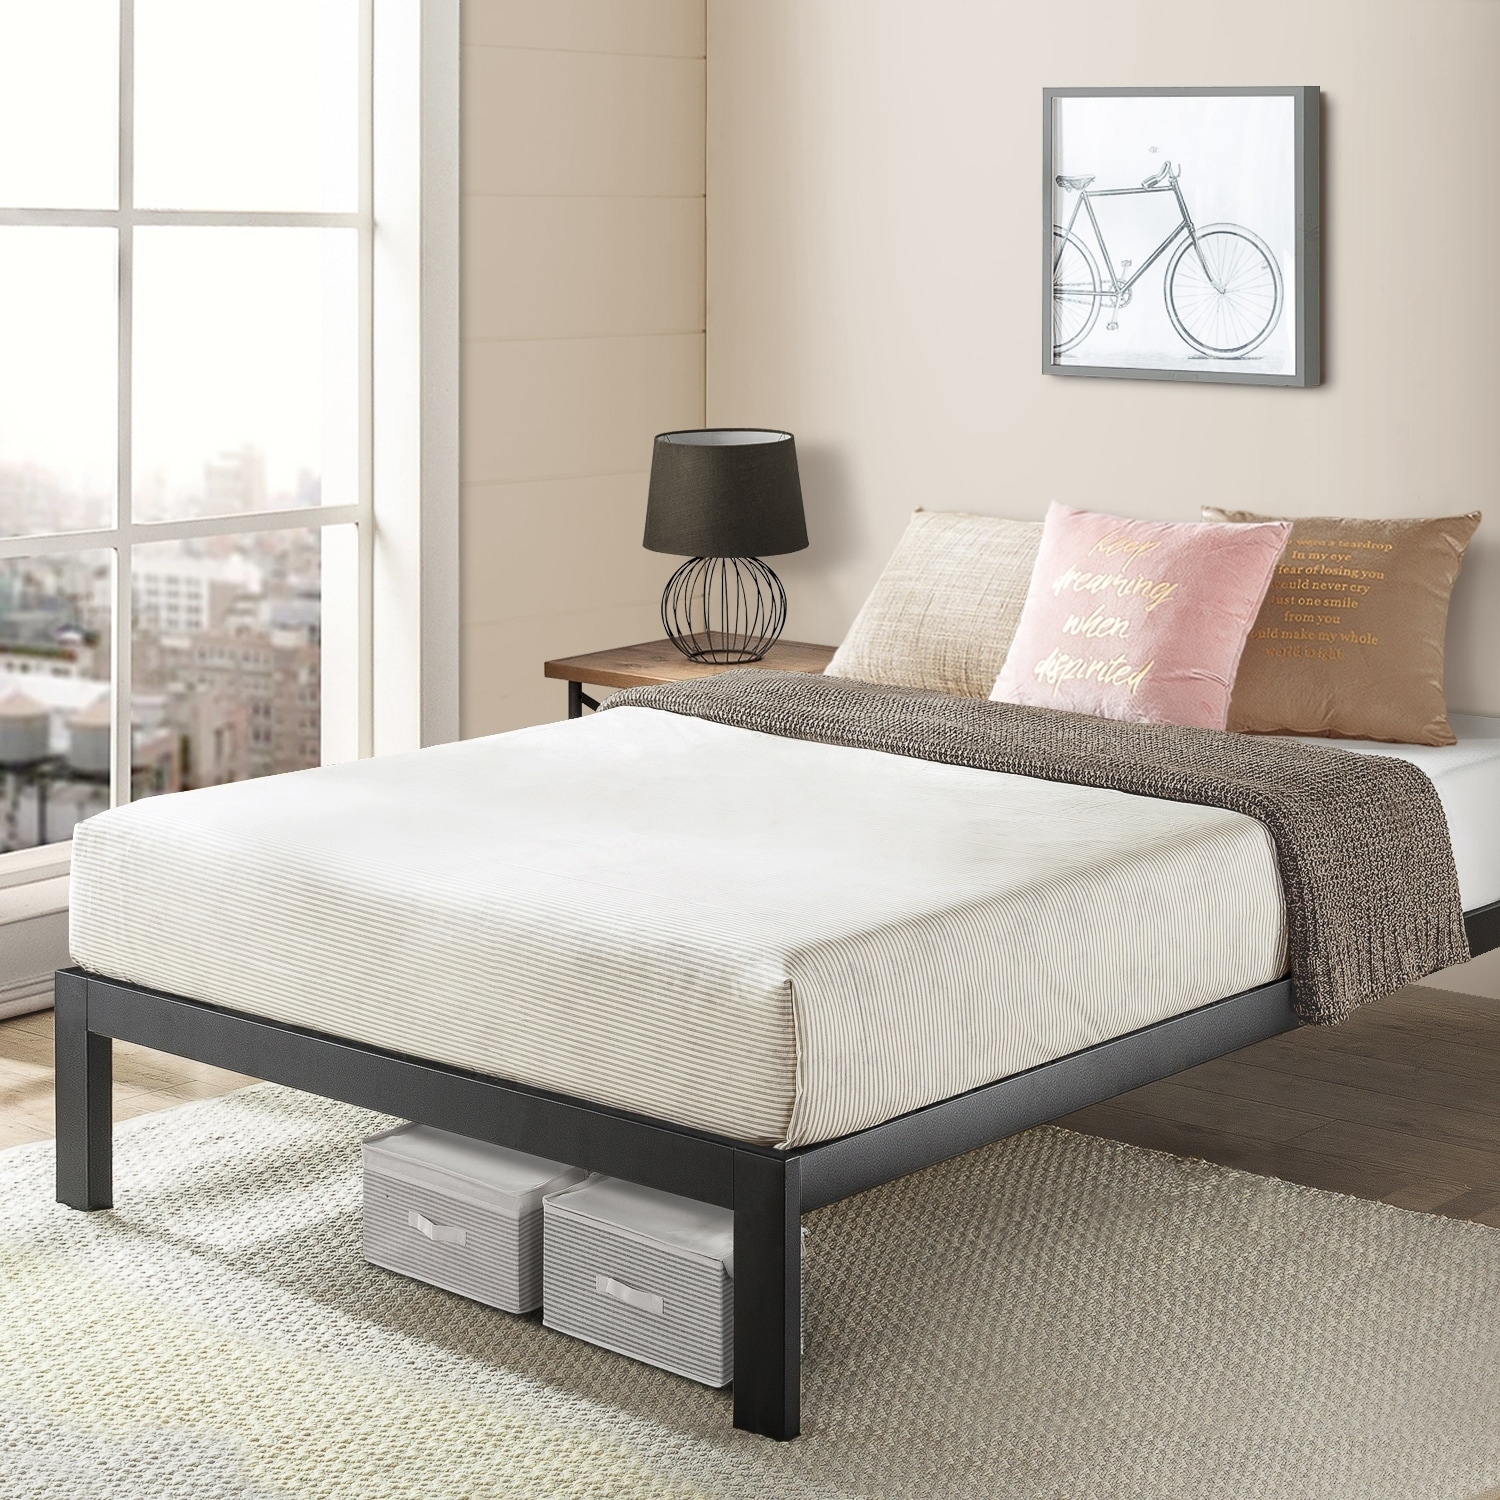 Shop Twin Size Bed Frame Heavy Duty Steel Slats Platform Series